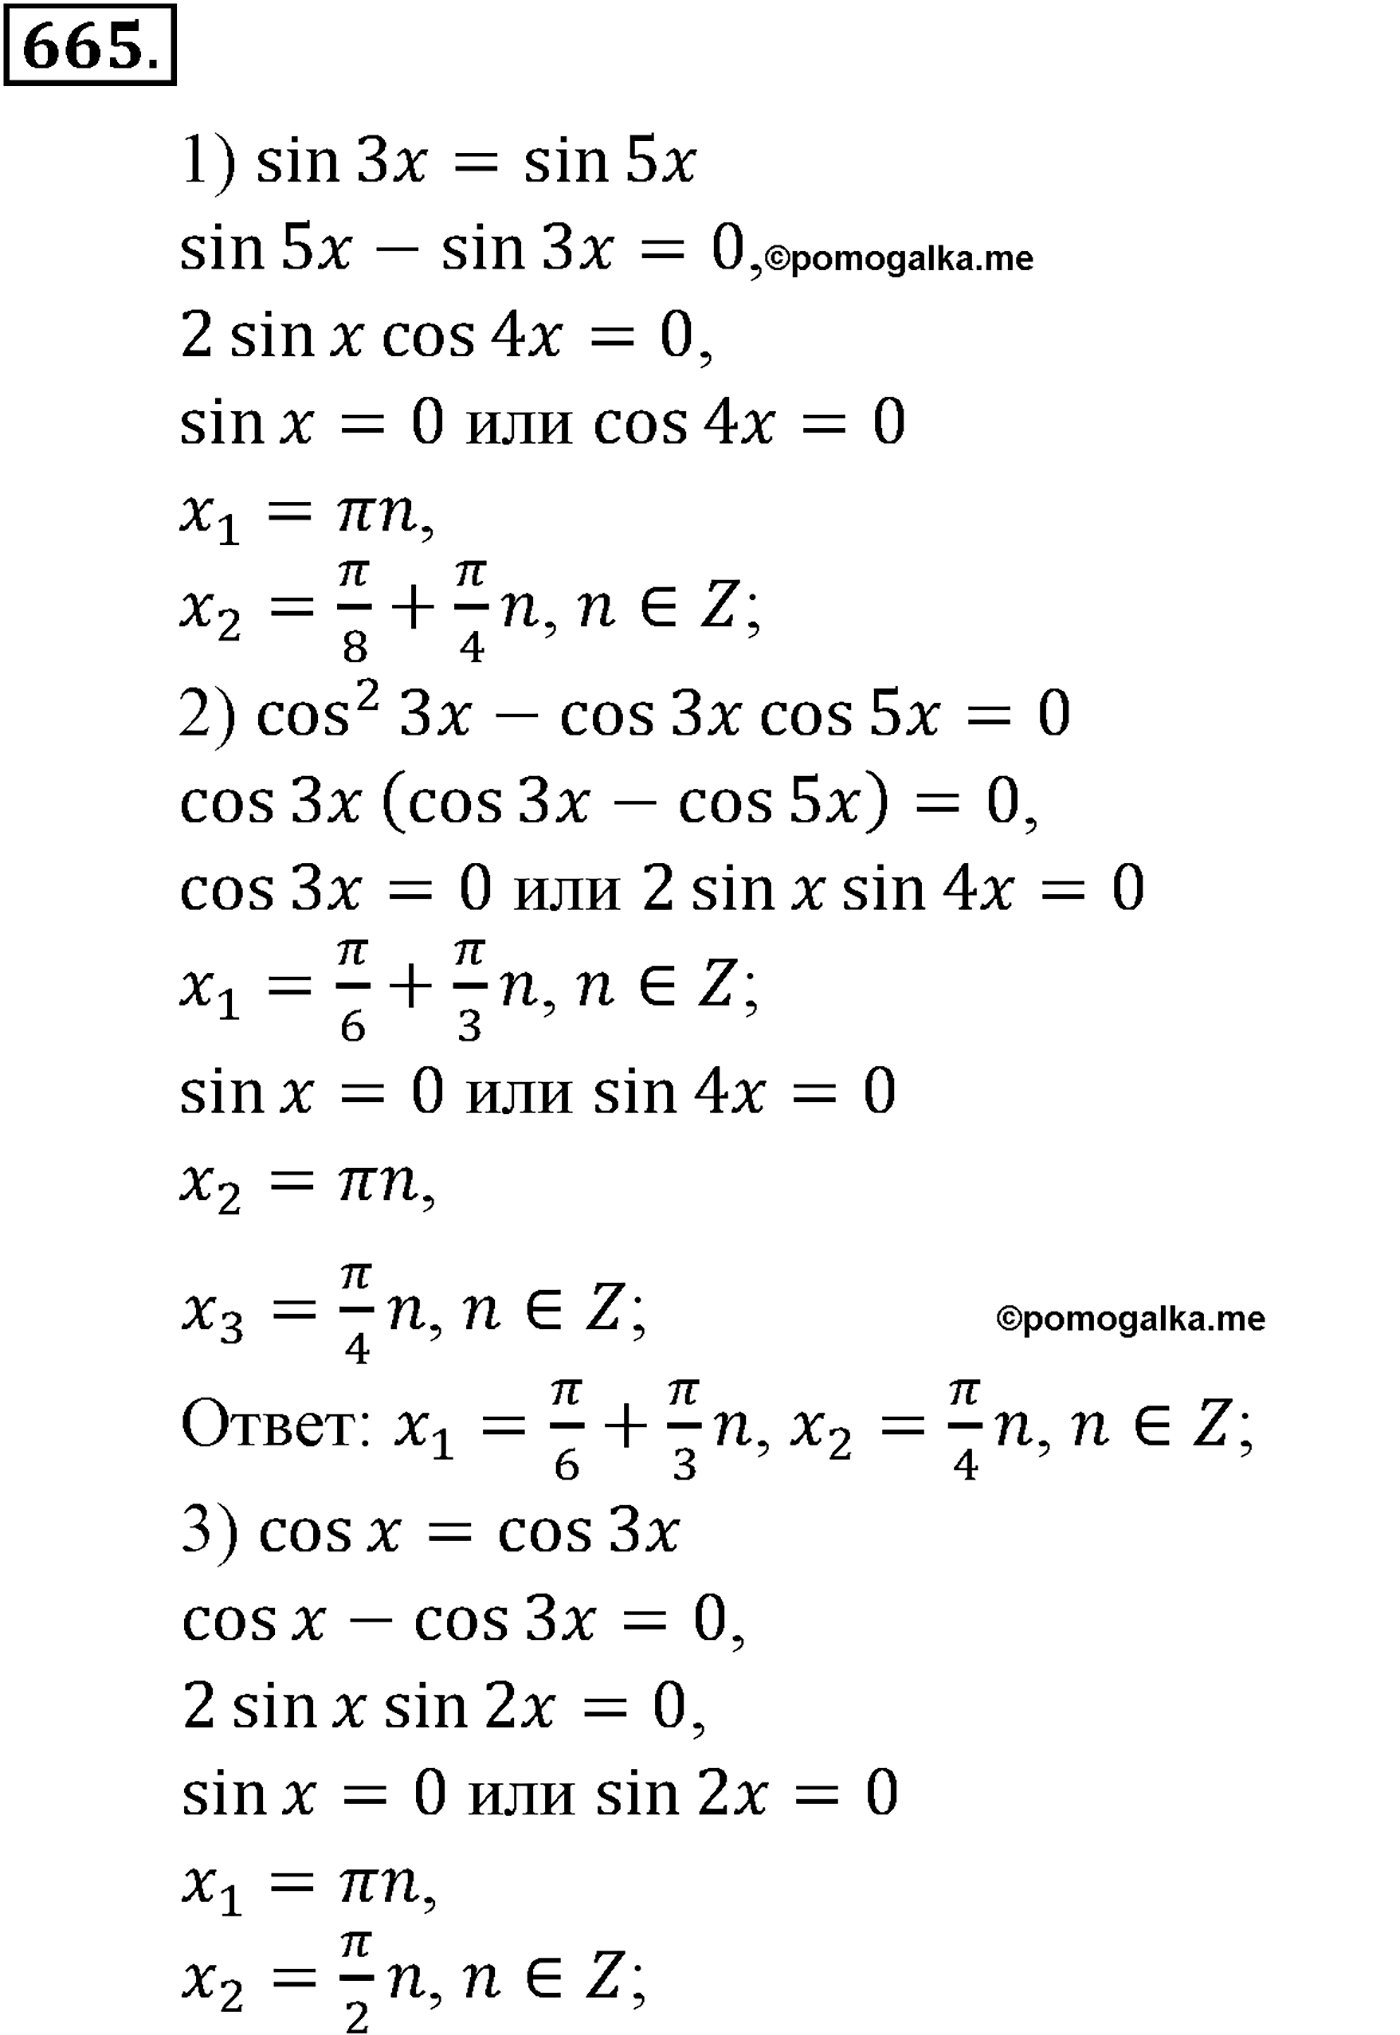 разбор задачи №665 по алгебре за 10-11 класс из учебника Алимова, Колягина